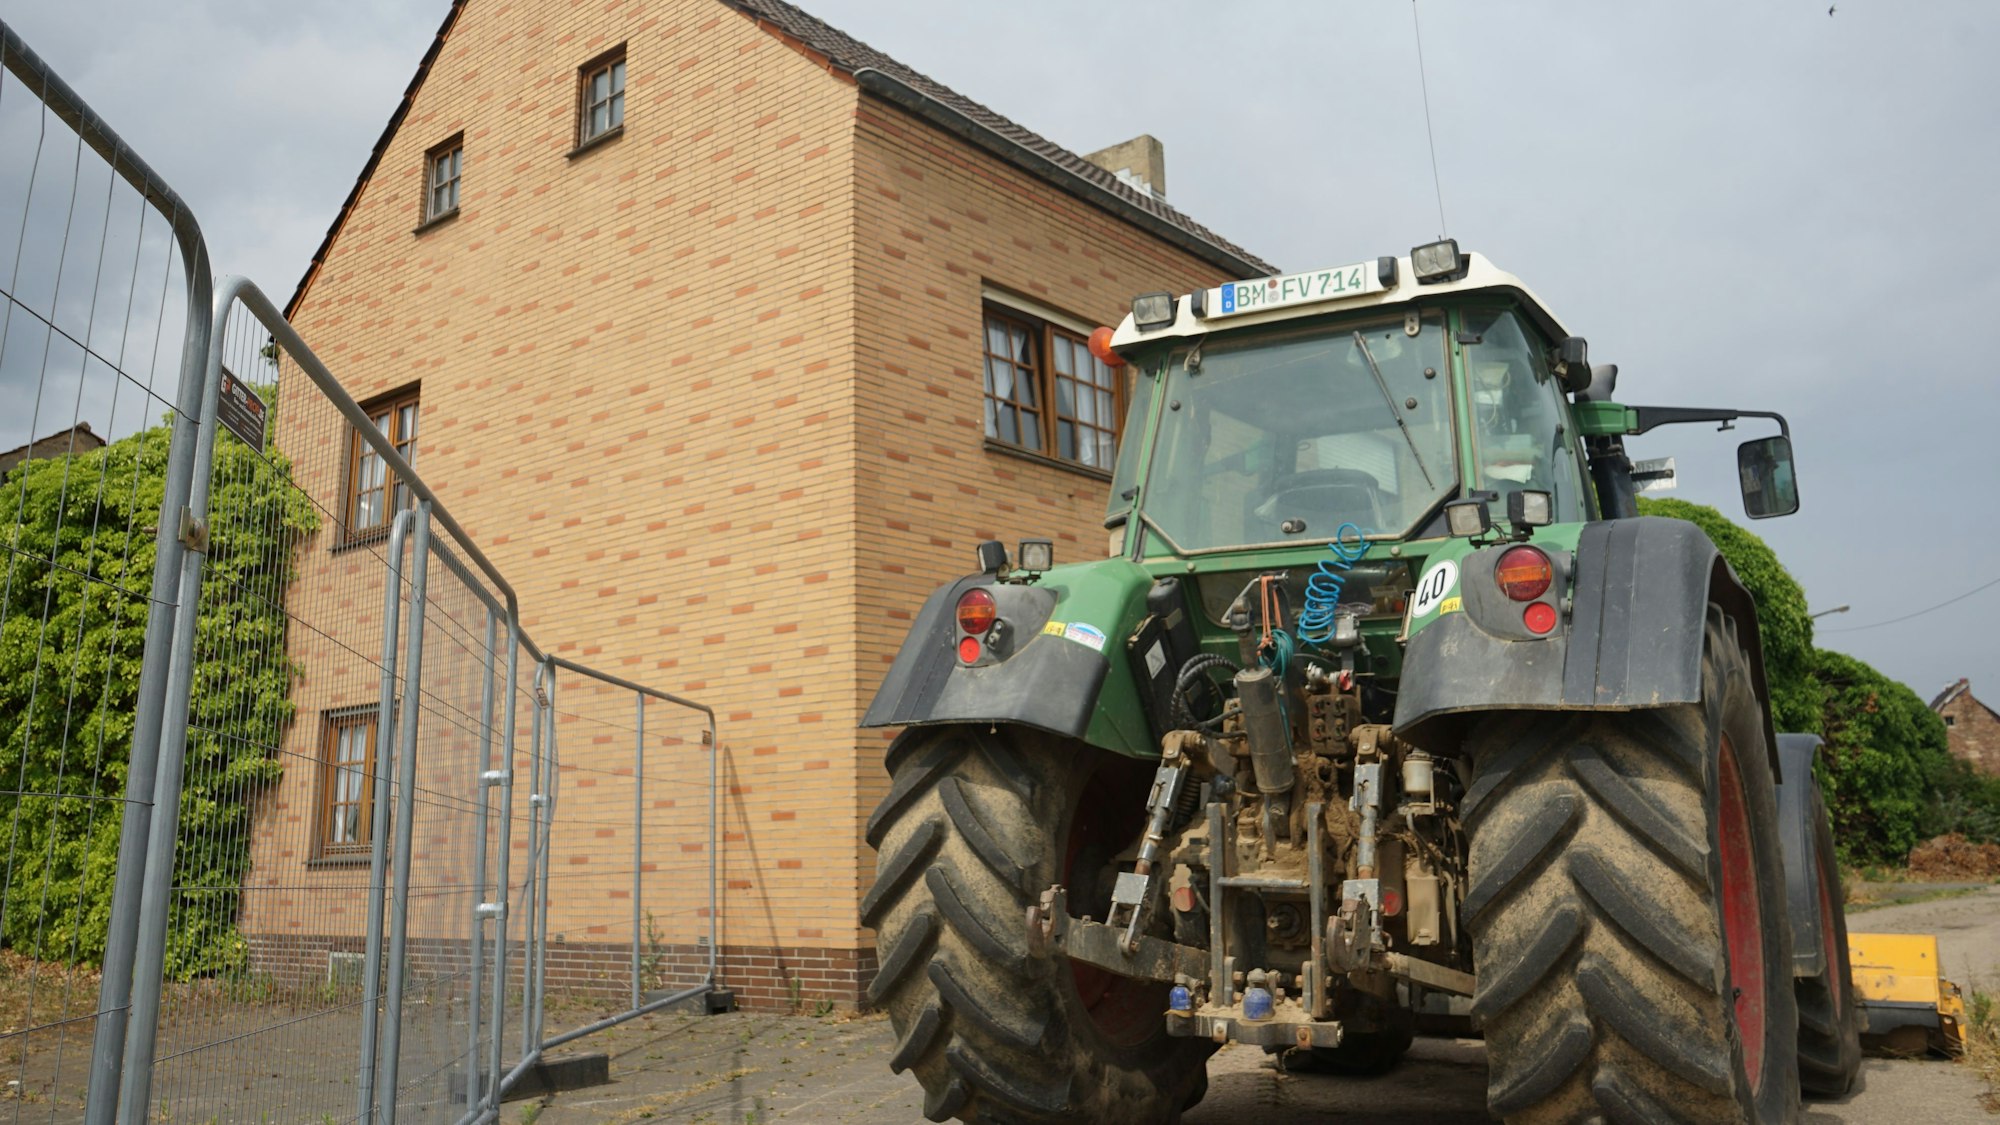 Der letzte Hof in Manheim, vor dem Gebäude steht ein Traktor.